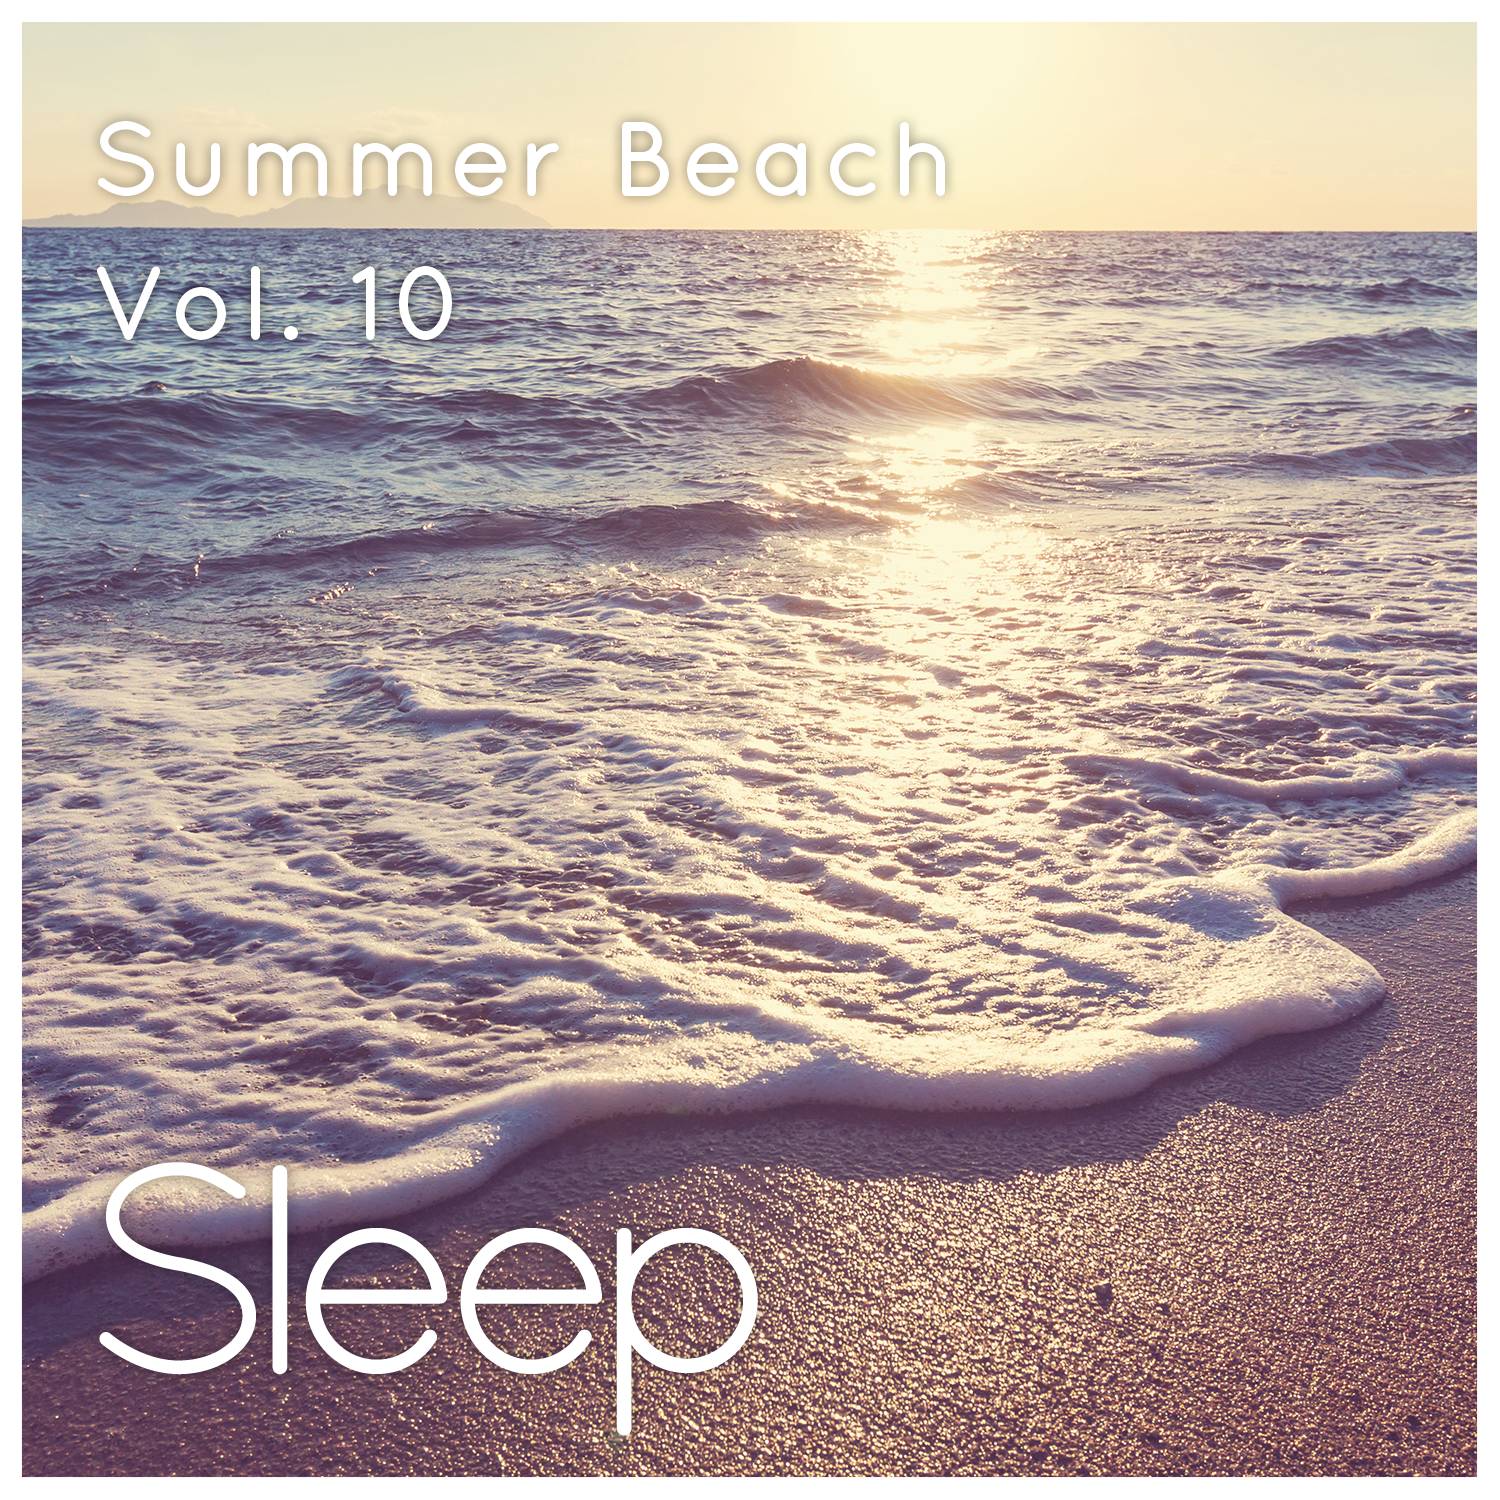 Summer Sleep at the Beach, Pt. 46